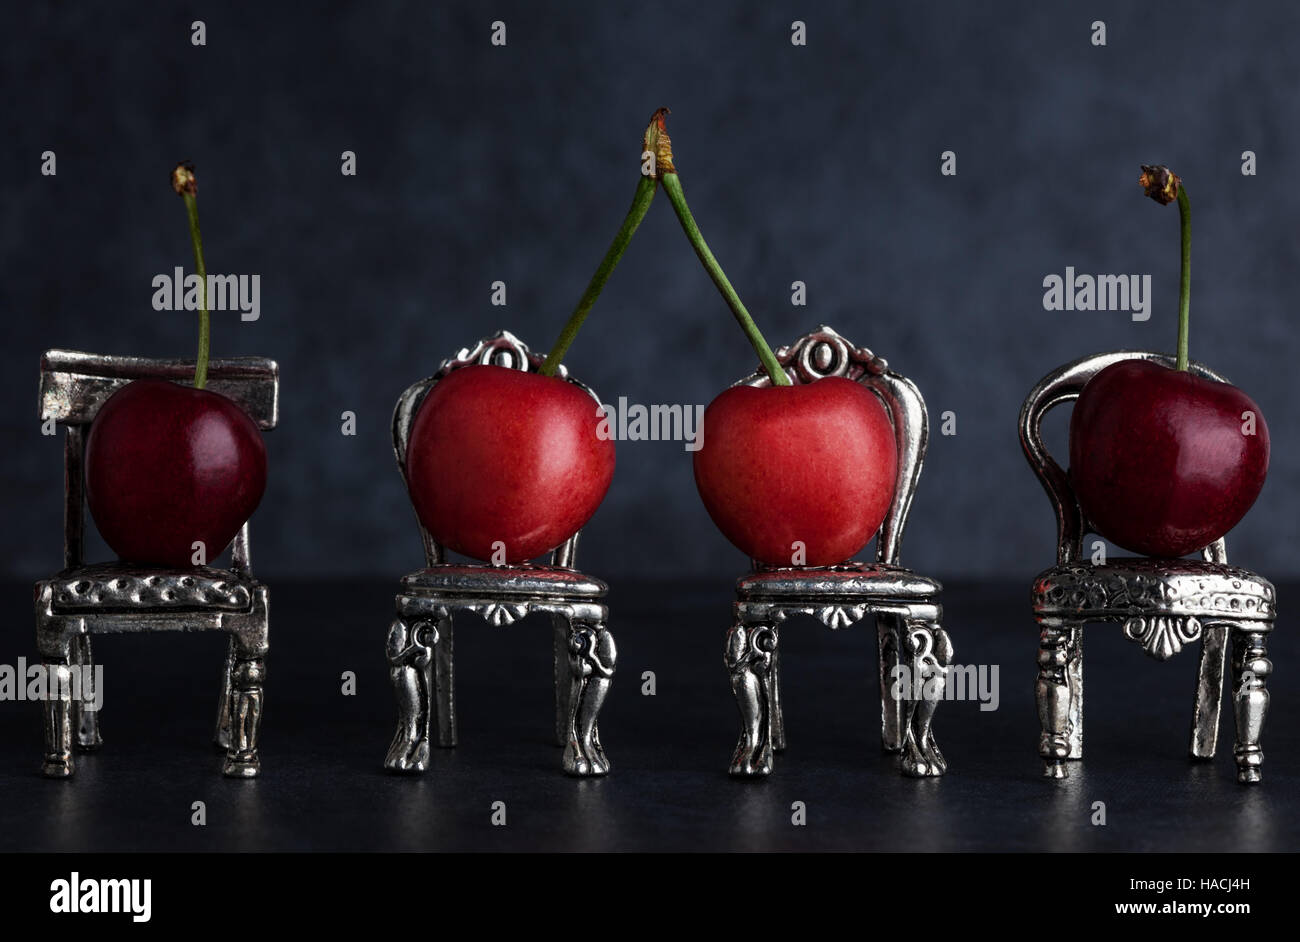 Quatre cerises délicieux rouge placé sur de minuscules chaises argent vintage sur fond sombre with copy space Banque D'Images